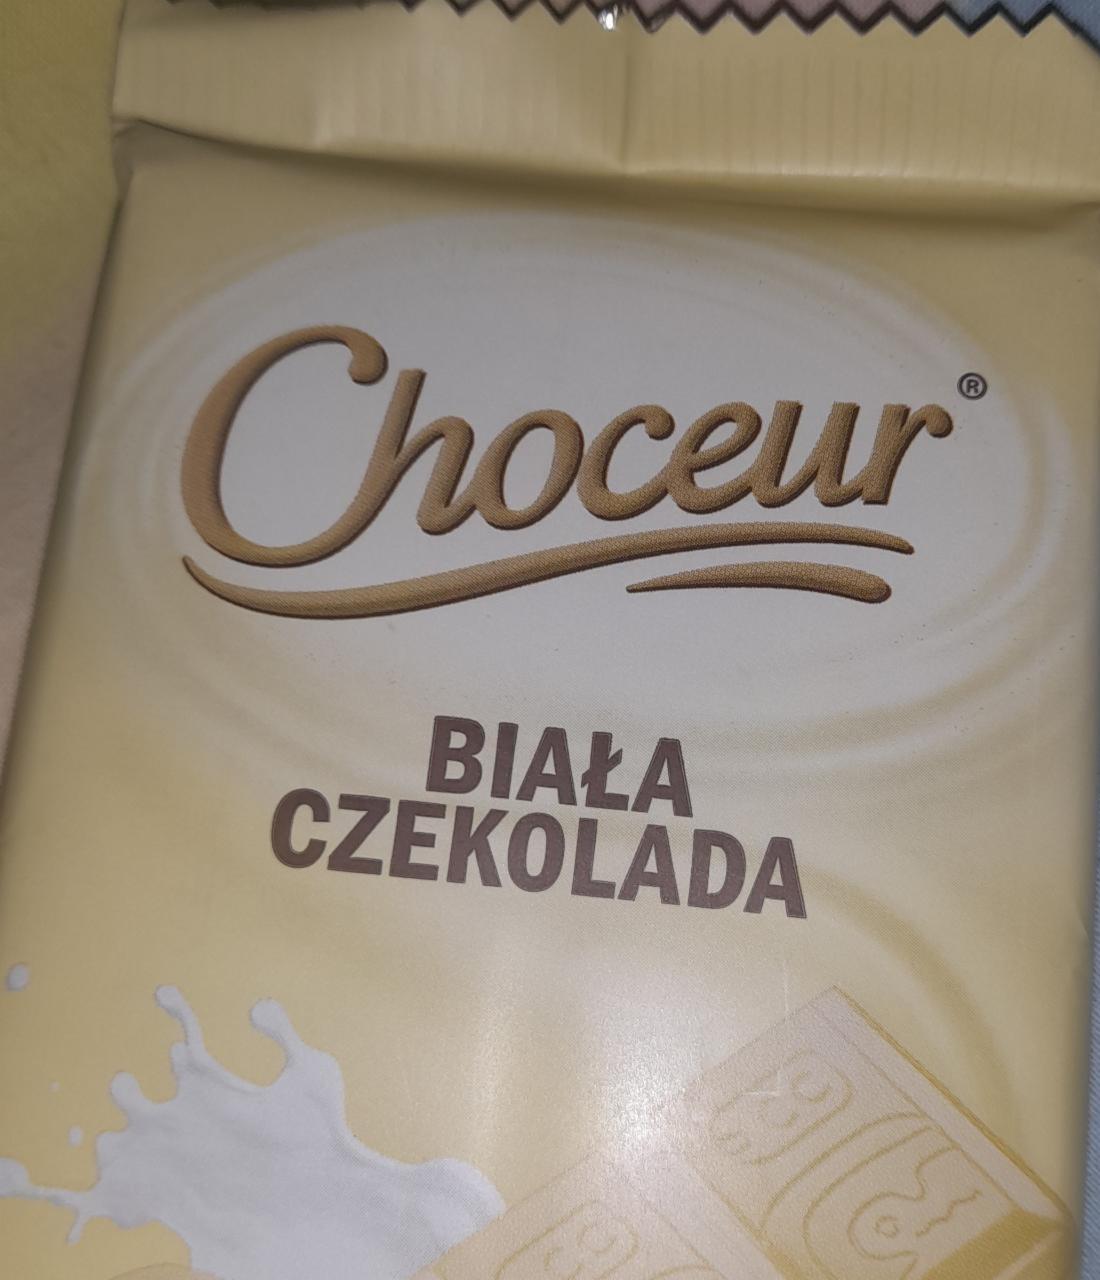 Zdjęcia - Biała czakolada Choceur